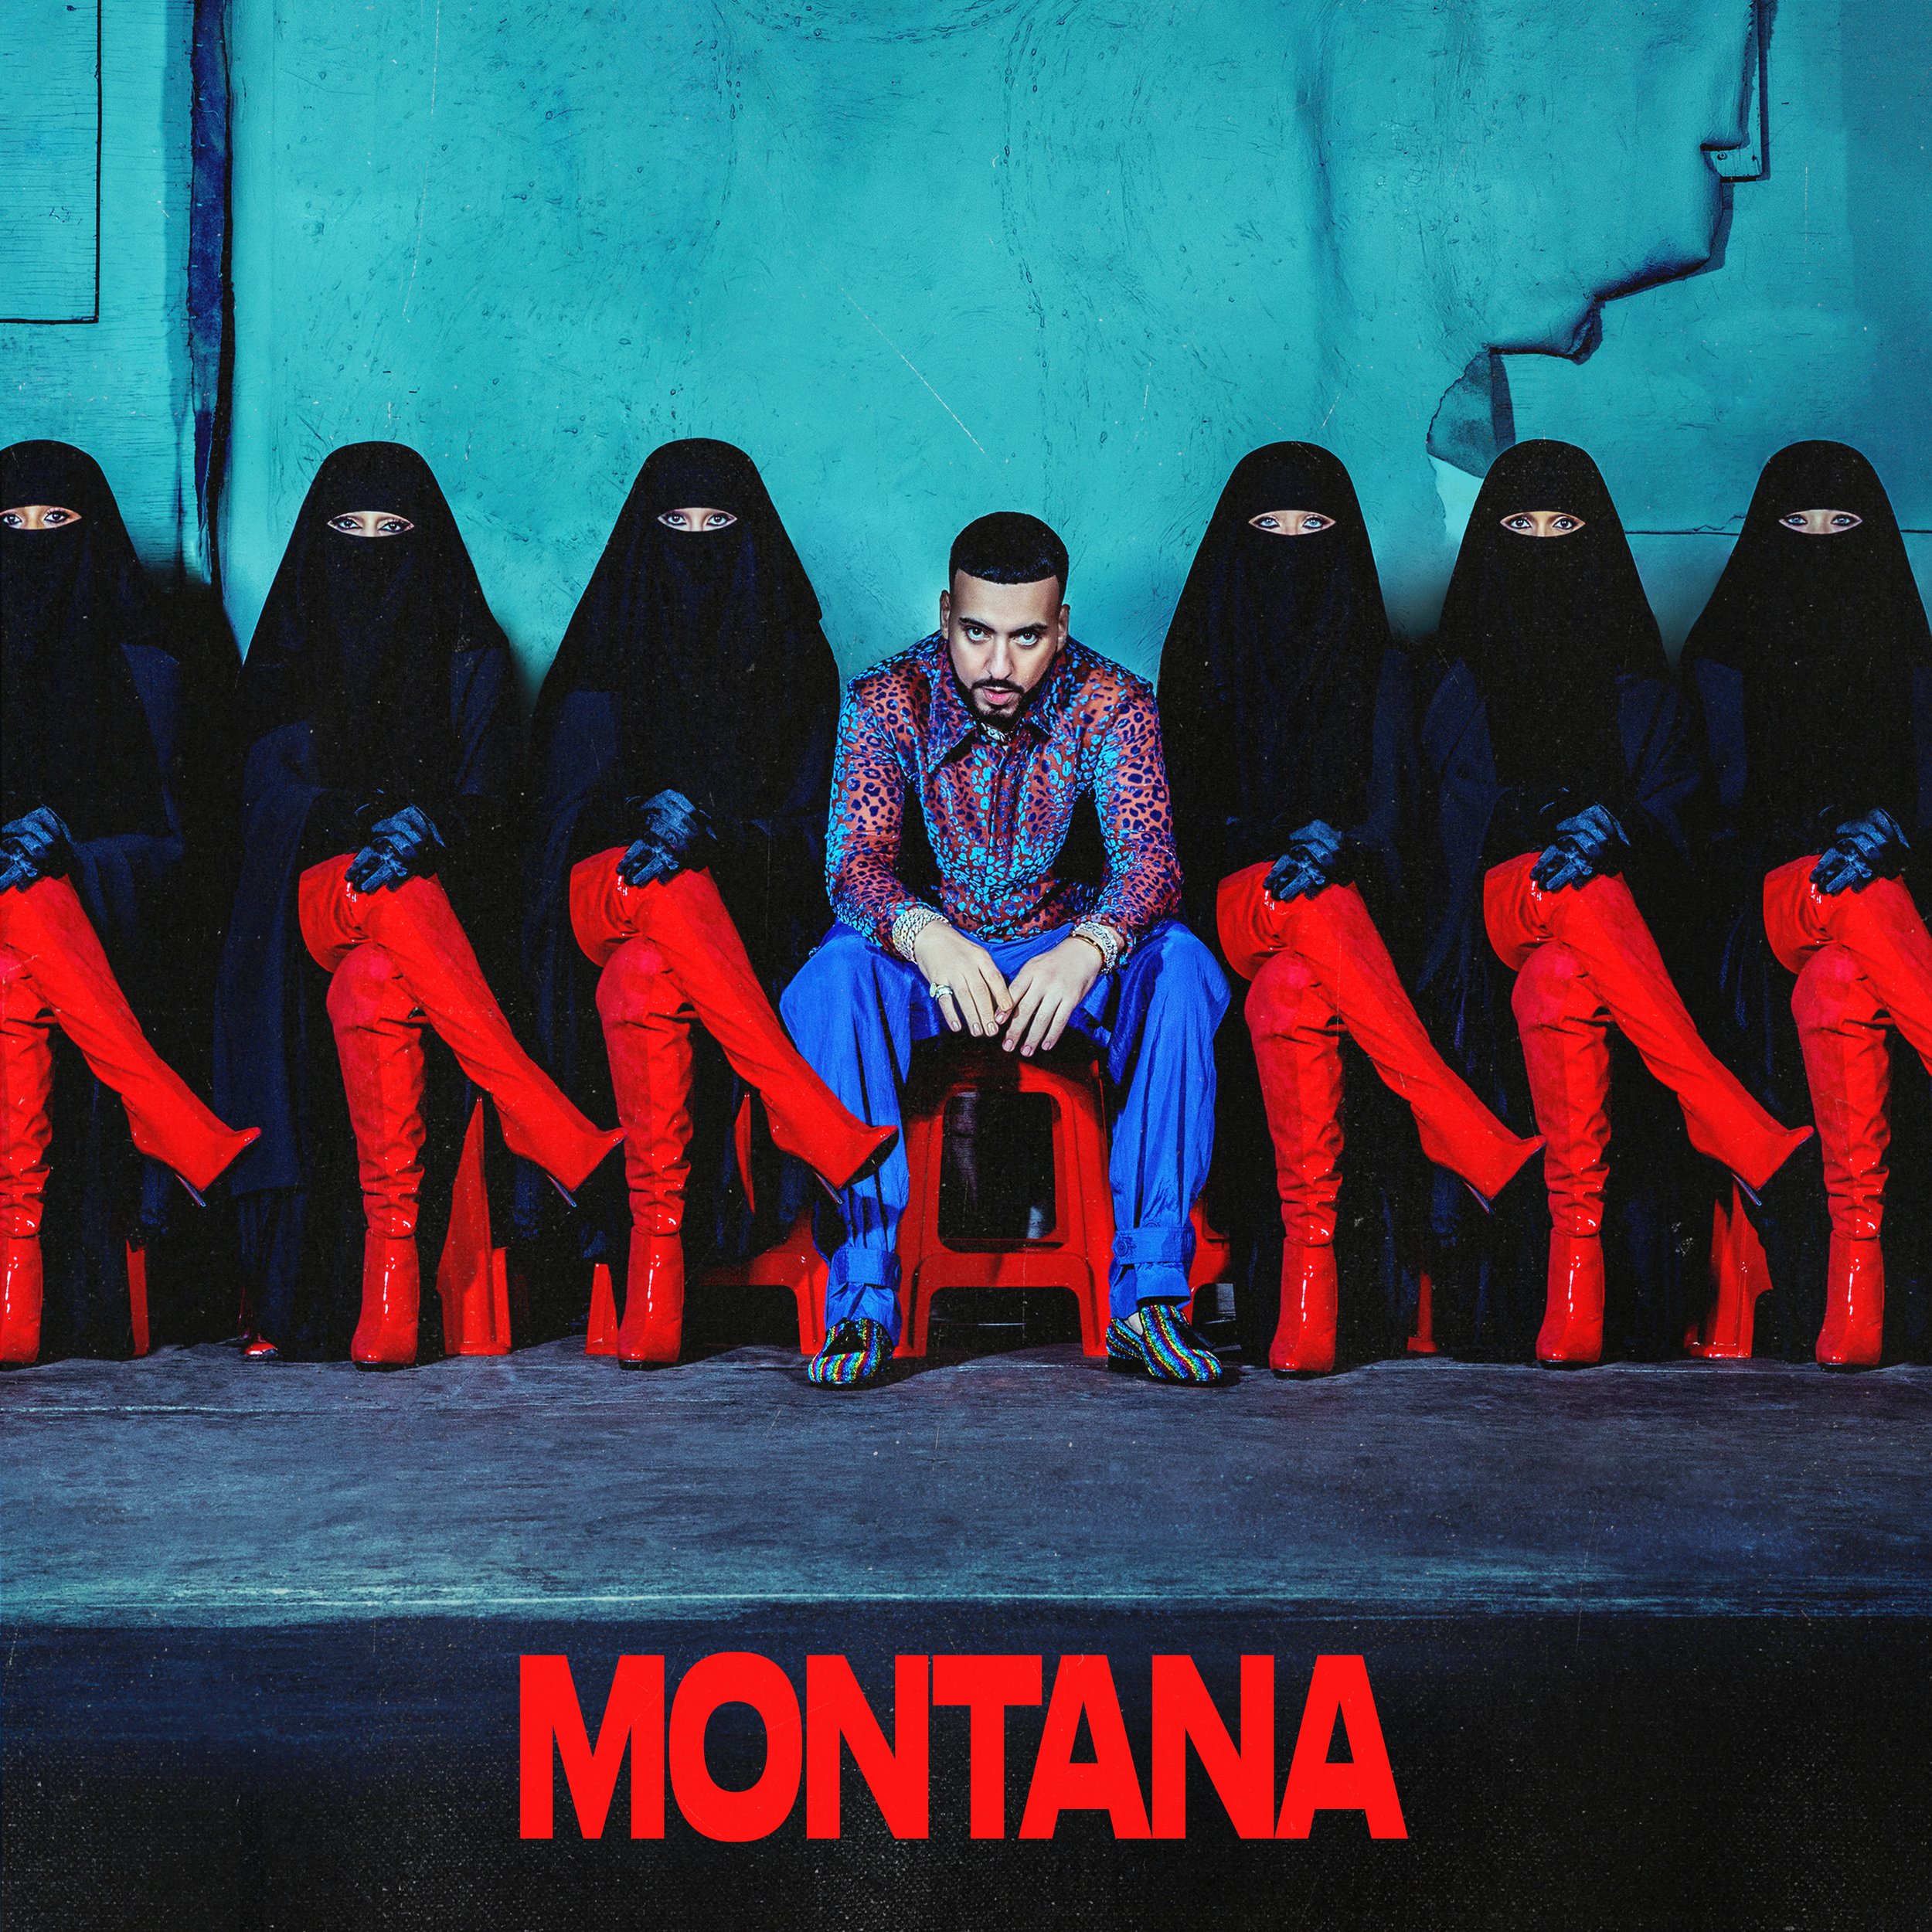 French Montana - MONTANA Album Cover Design